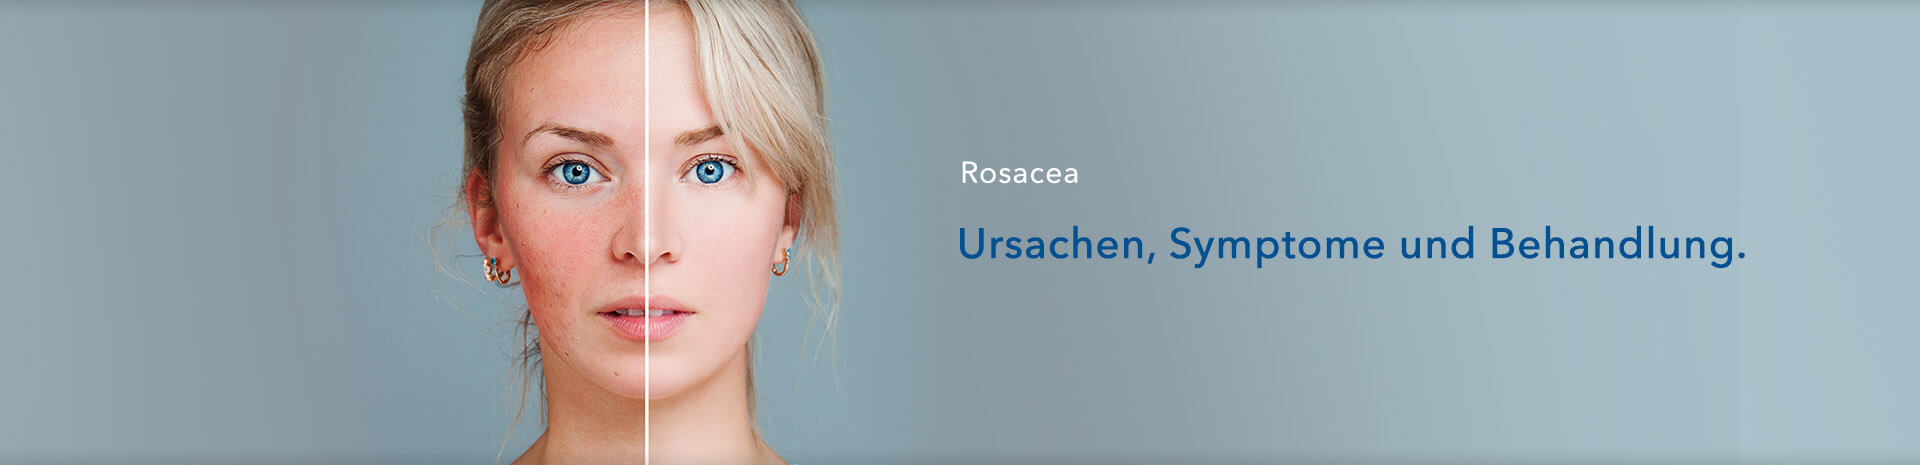 Rosazea: Ursachen, Symptome und Behandlung